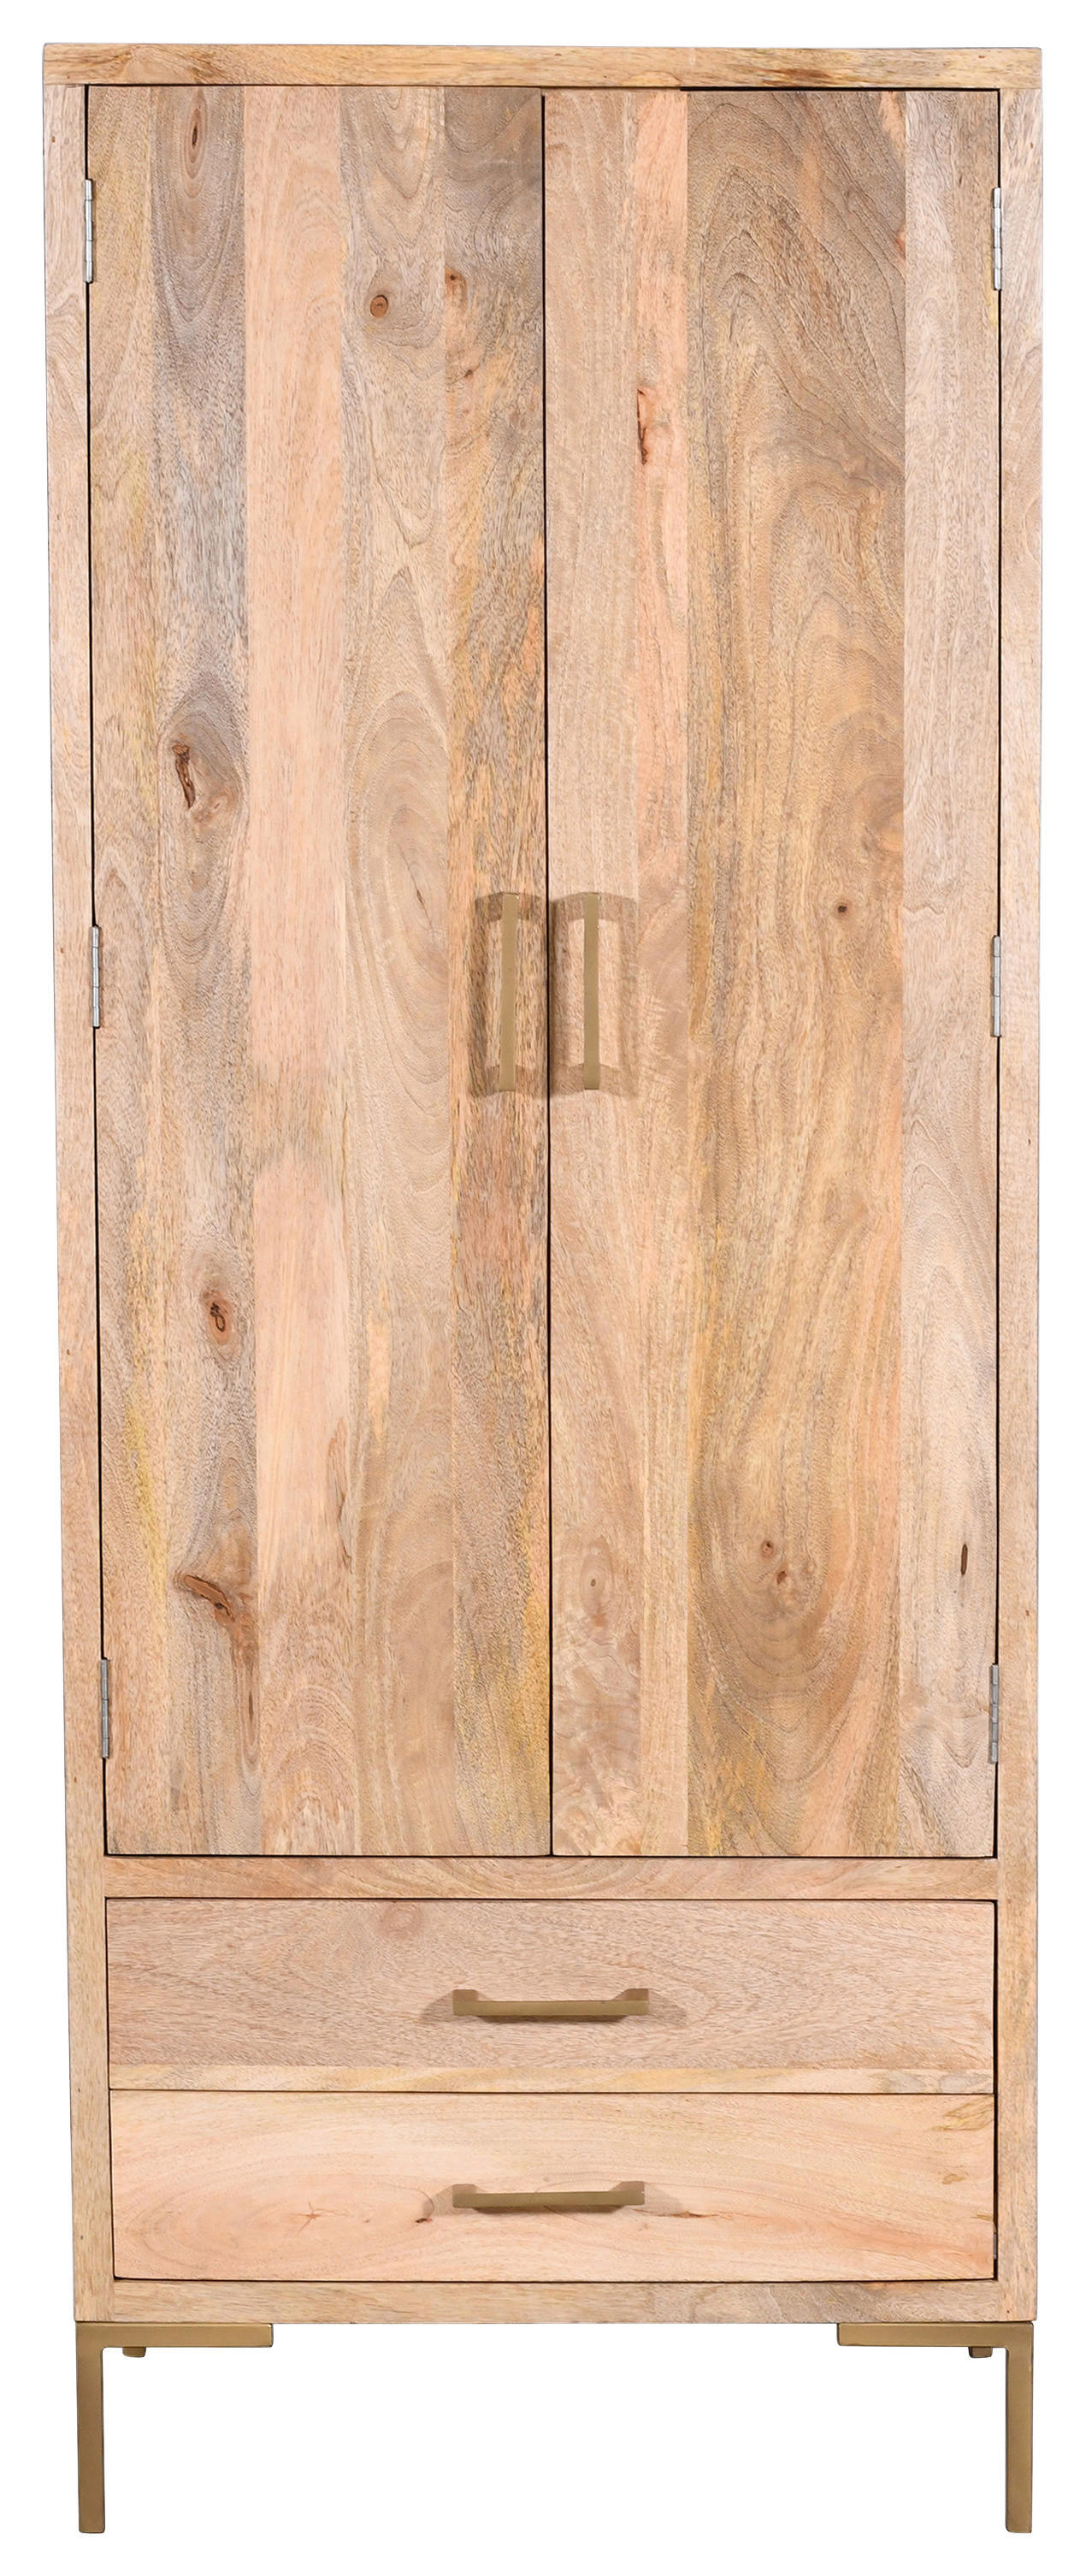 Levně MID.YOU ŠATNÍ SKŘÍŇ, mangové dřevo, přírodní barvy, 75/192/45 cm